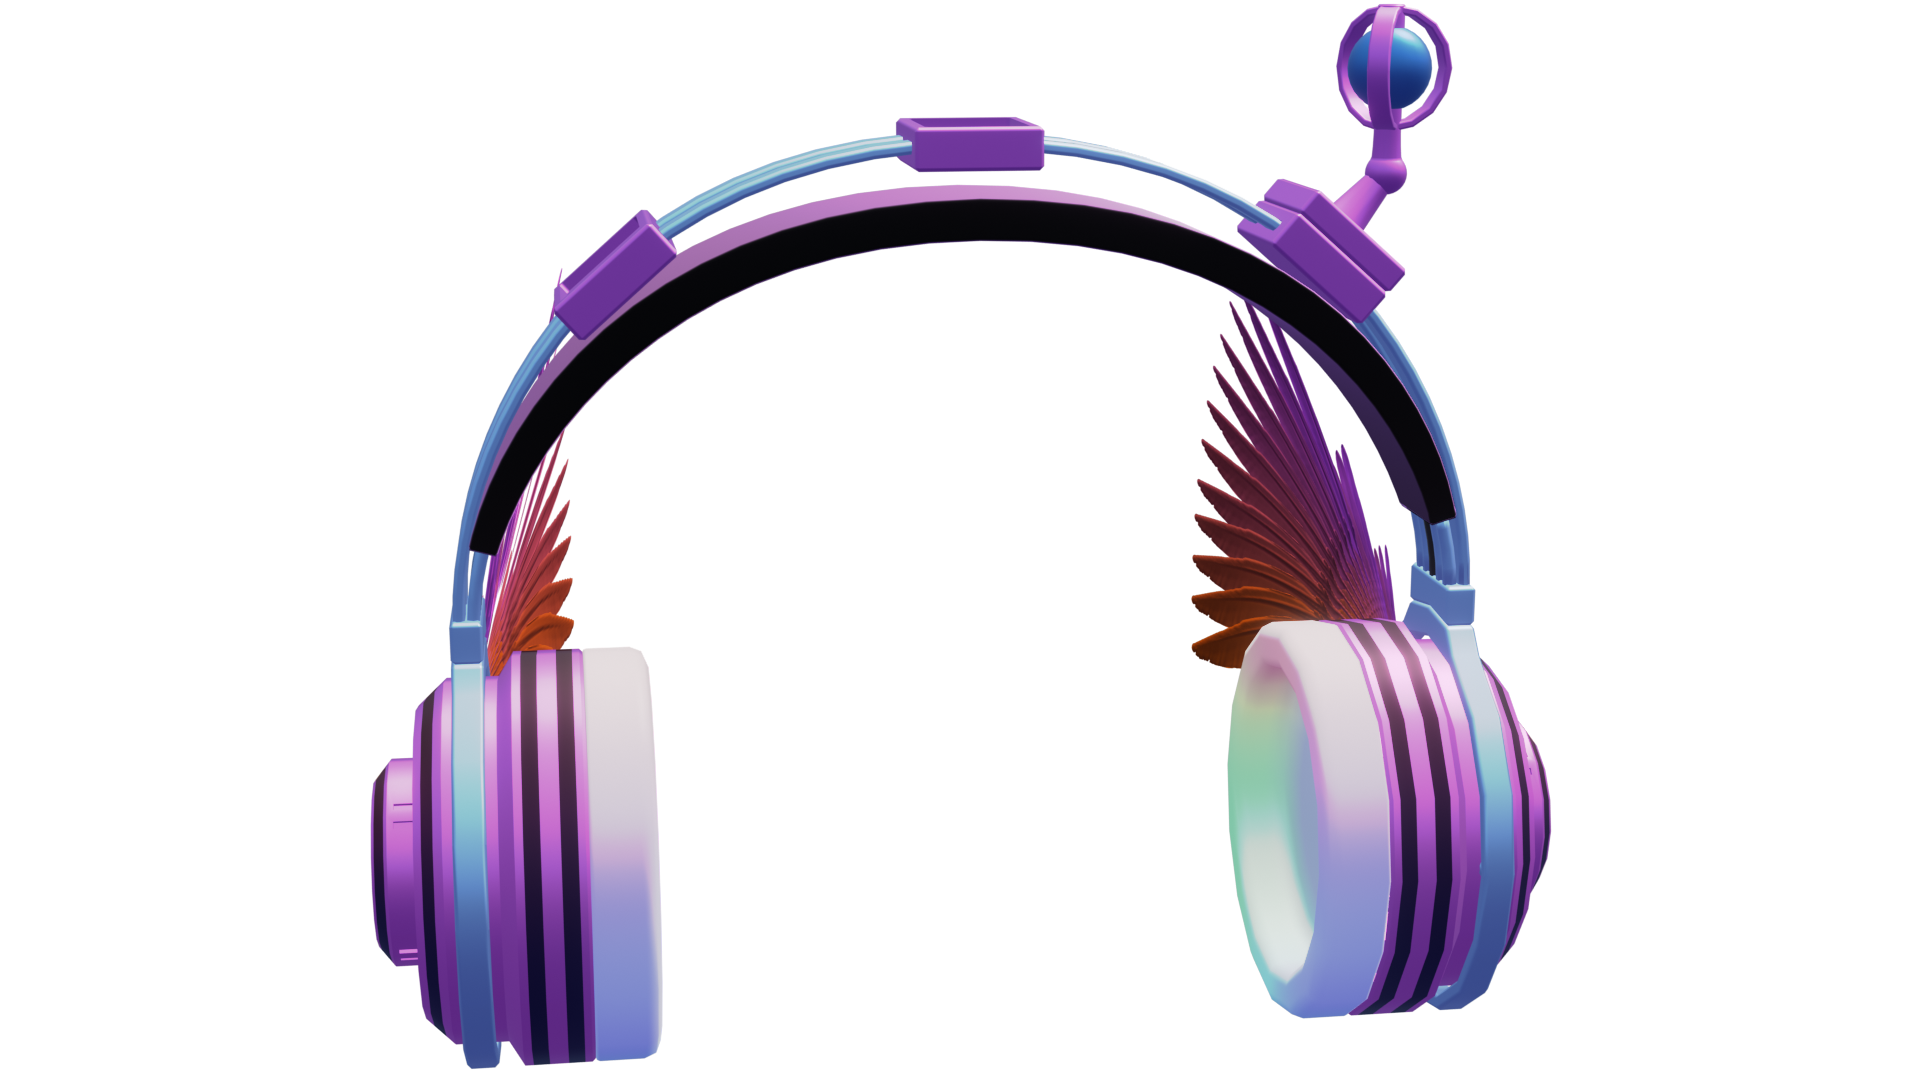 Eevee render of the FuzzyExpress Gen3 Multipurpose Gaming Headphones